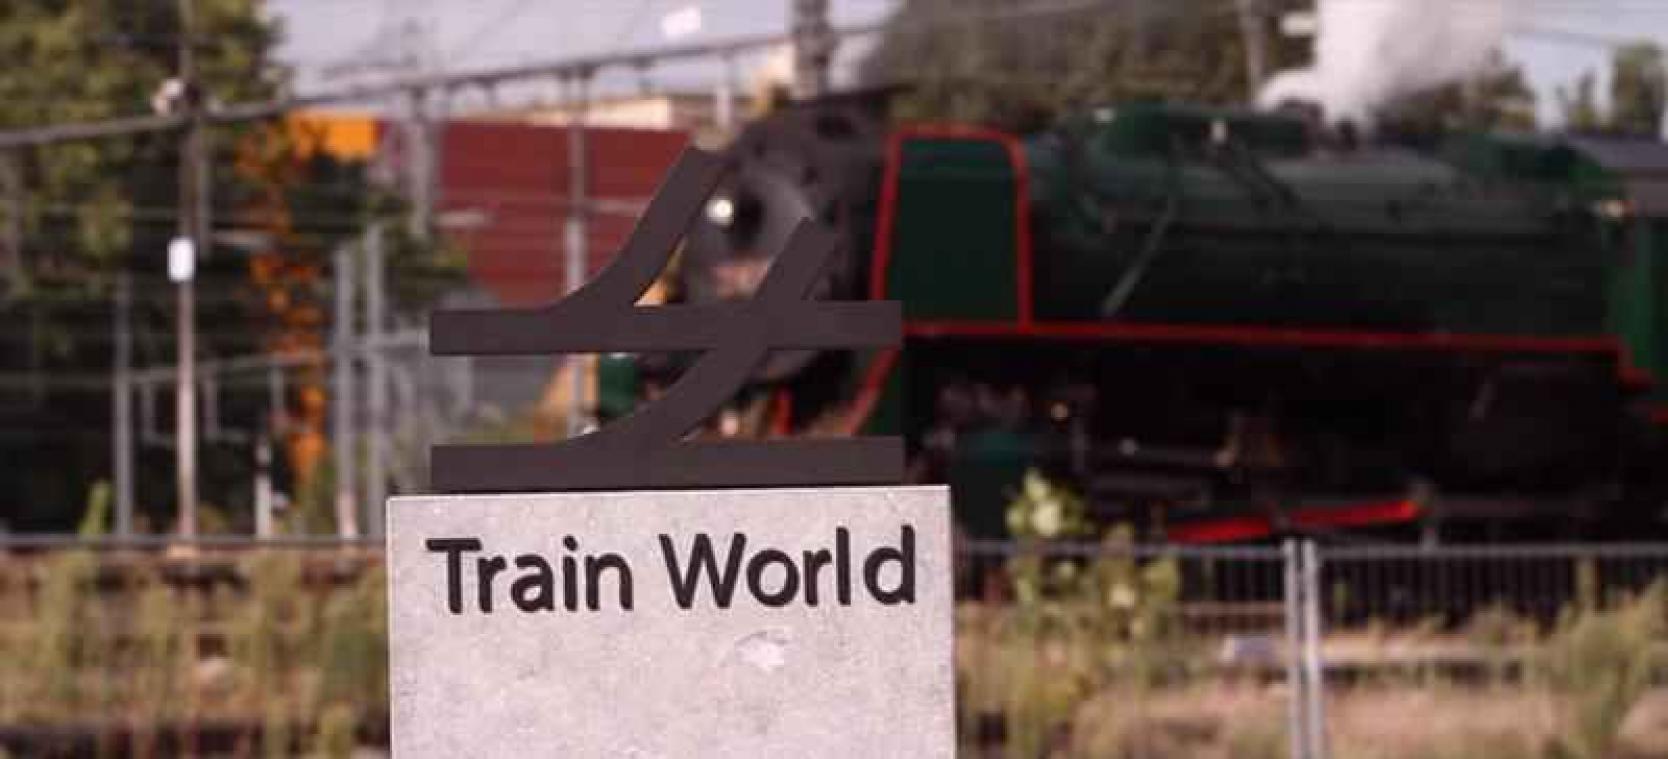 Le succès inattendu du Train World à Bruxelles